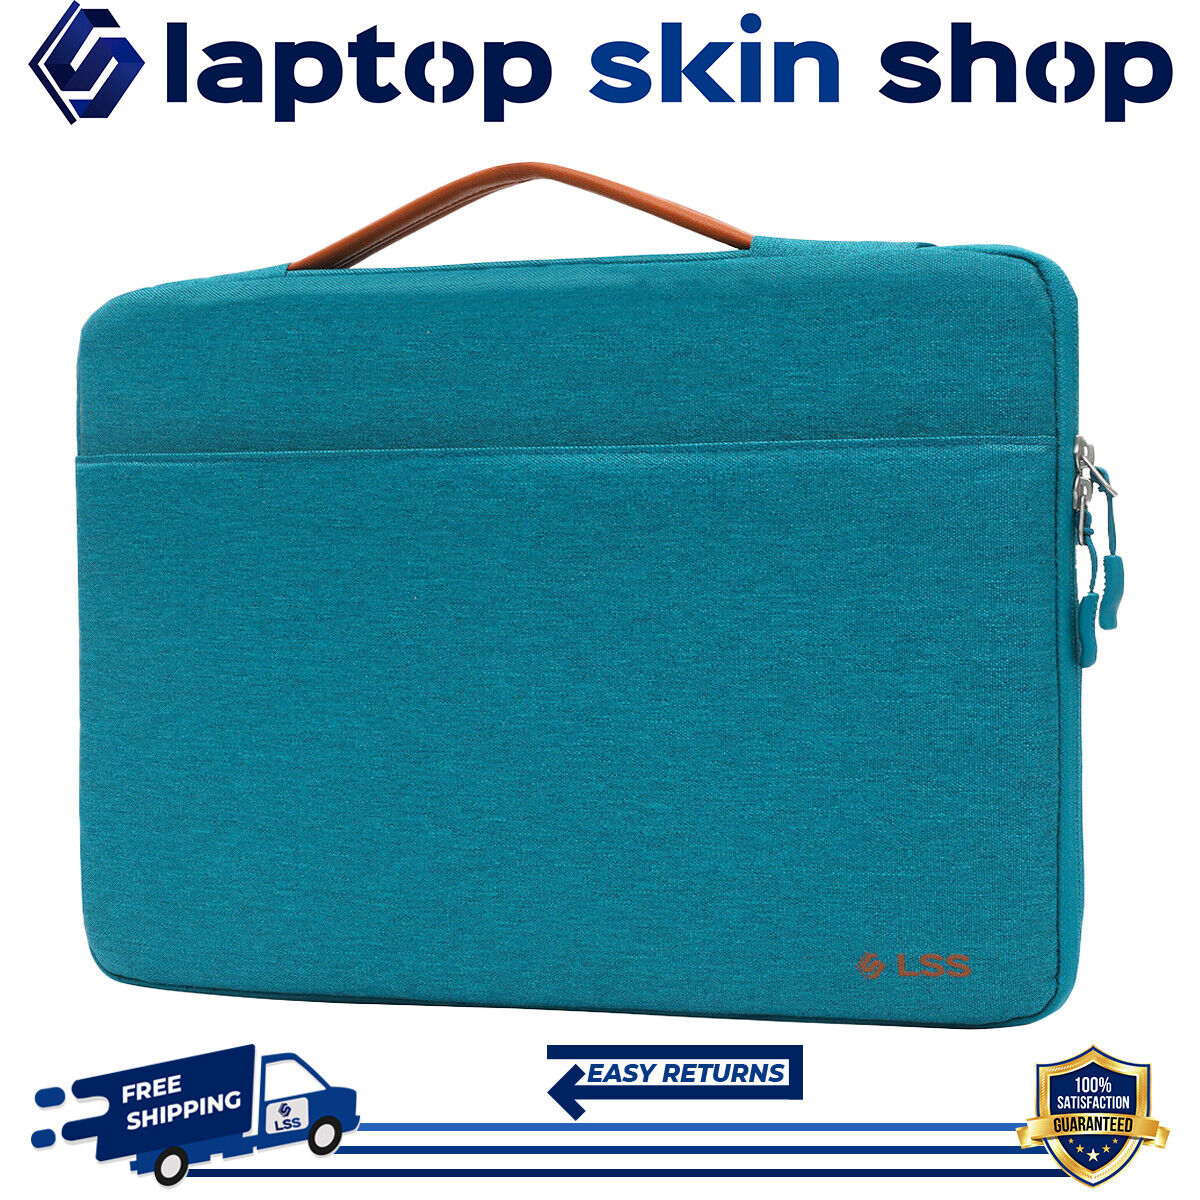 Laptop Bag Sleeve Carry Case Protective Shockproof Handbag 14-15.6 Inch Teal